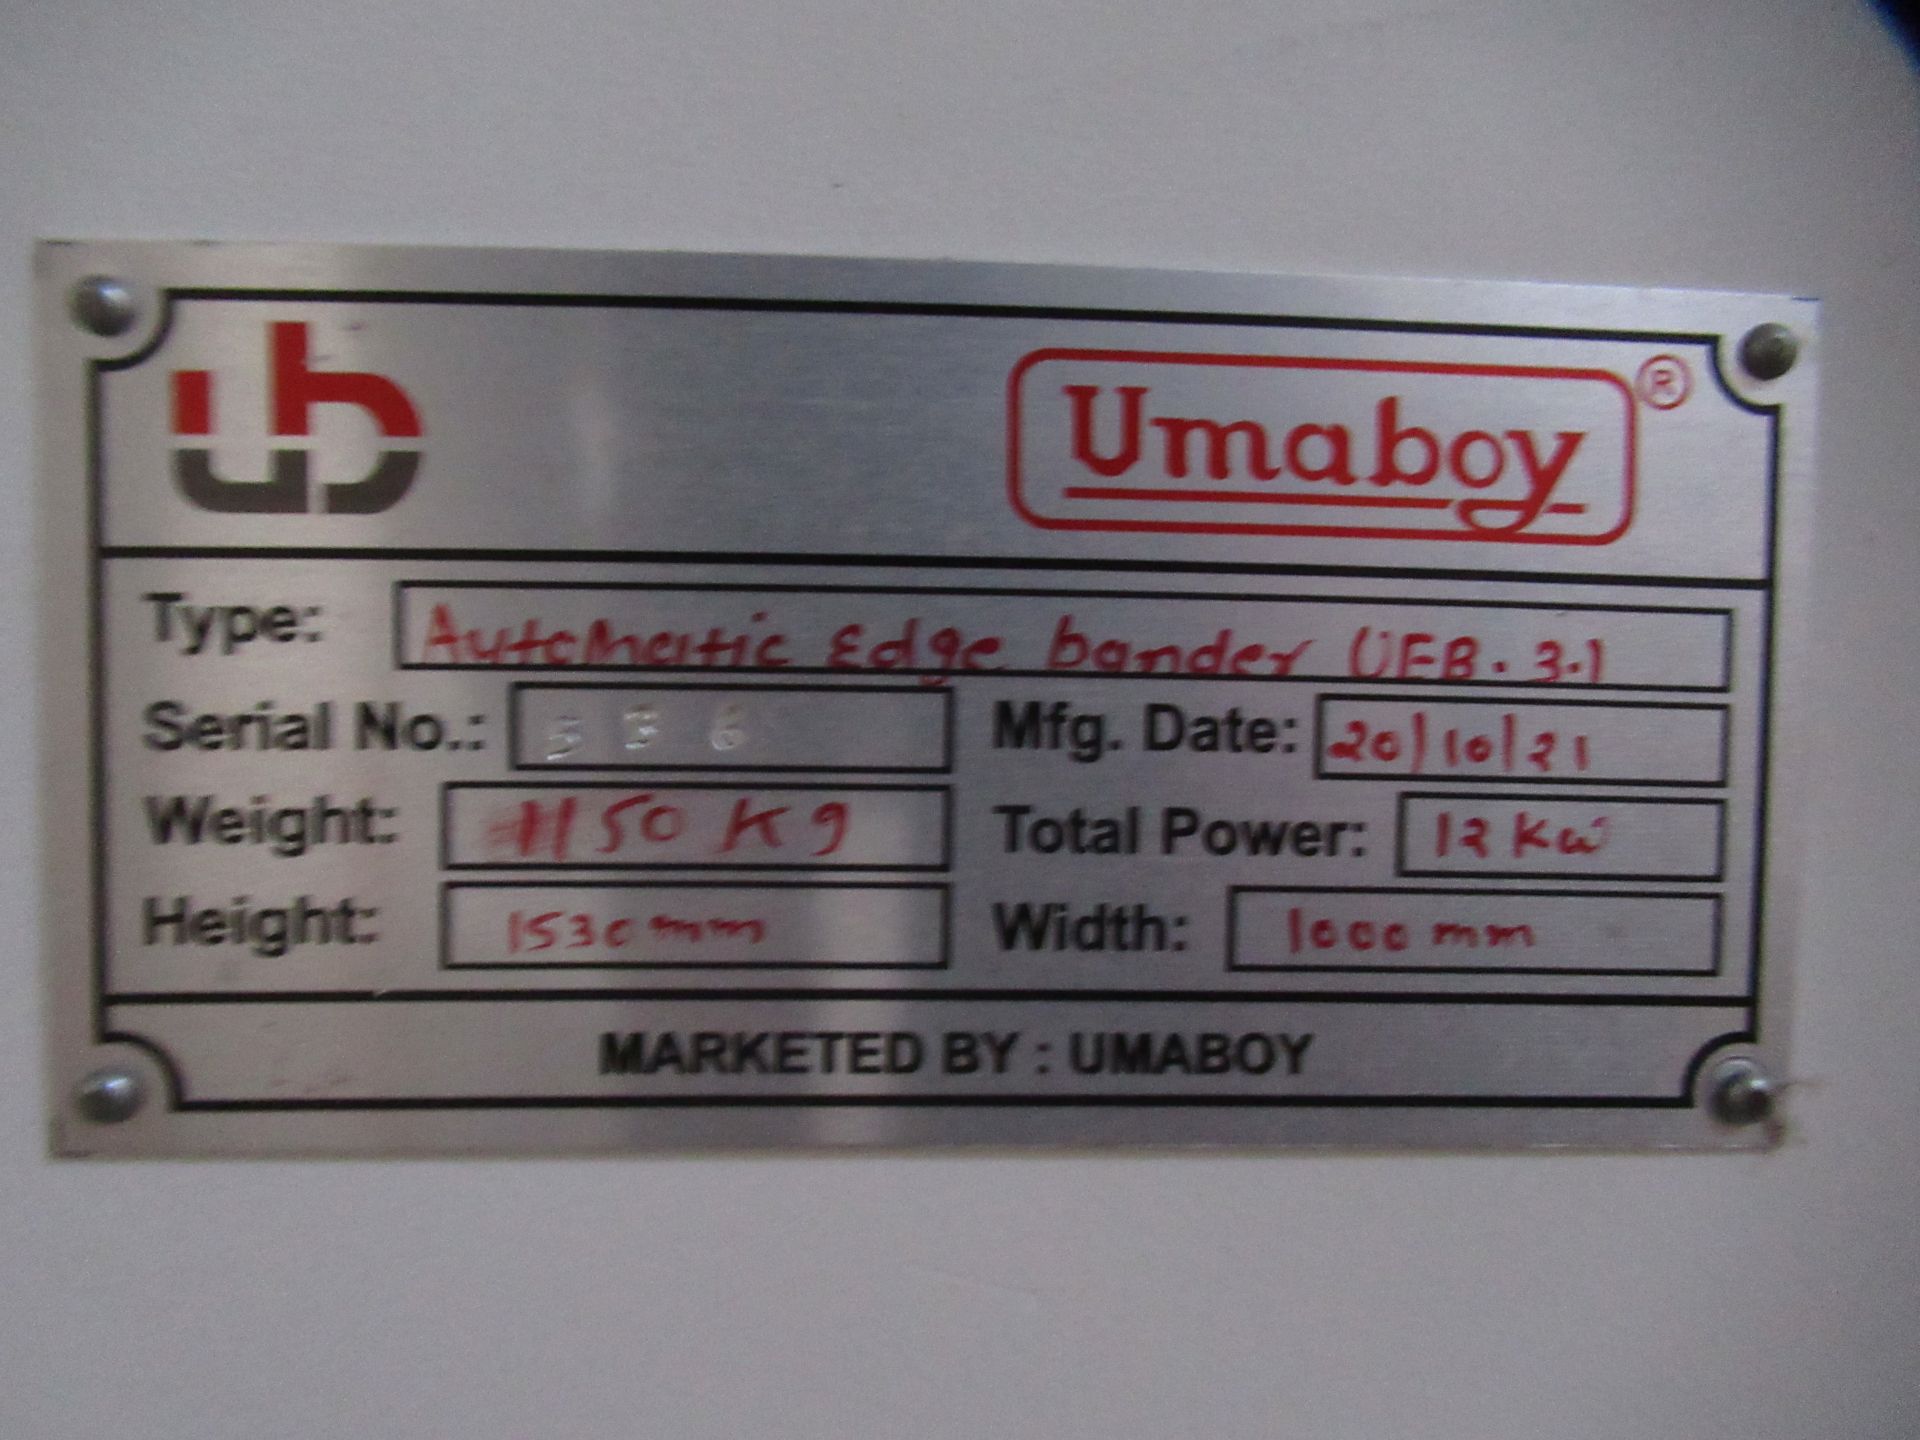 Umaboy UEB 3.1 Automatic Edge Bander - Image 5 of 24